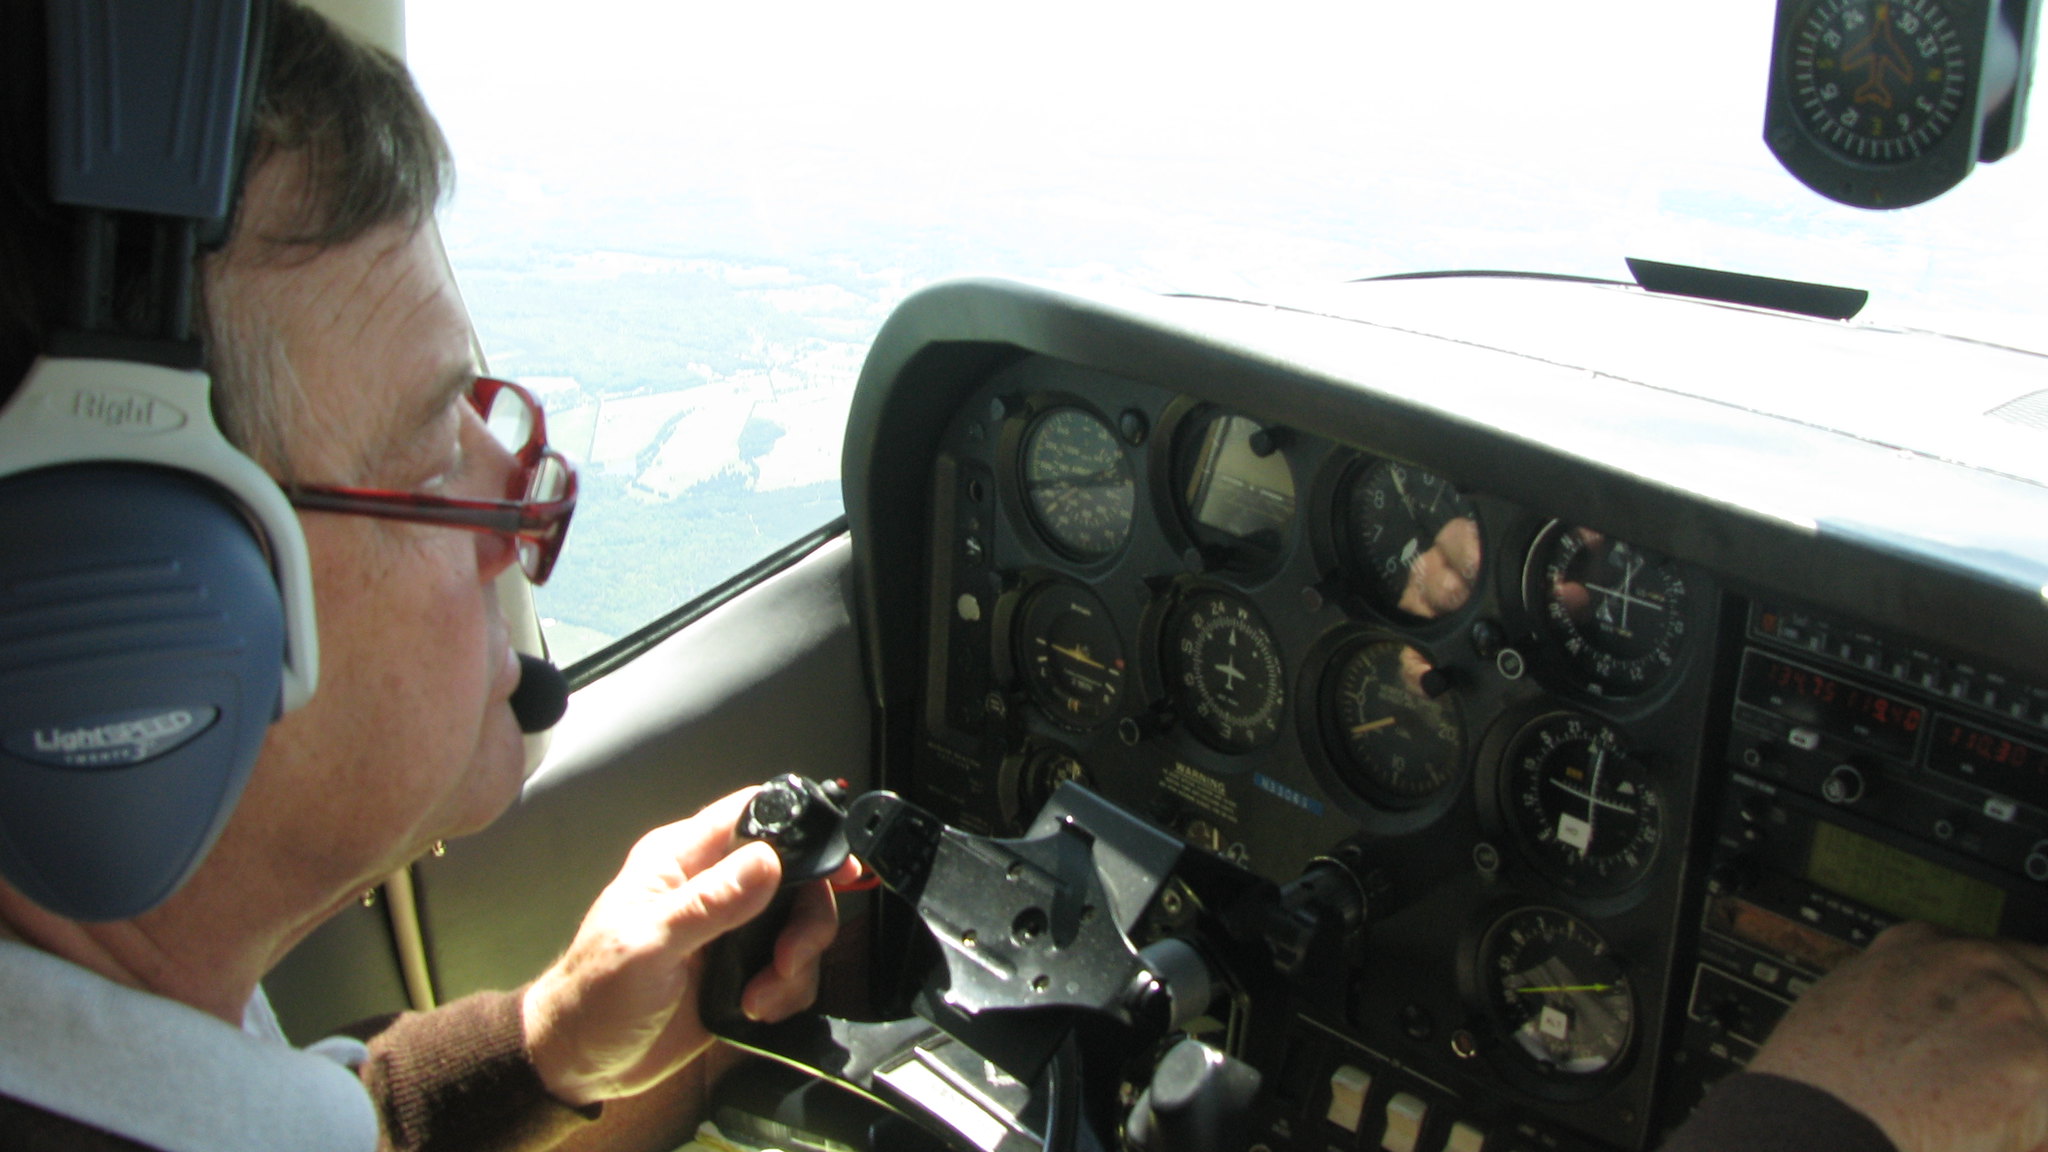 Un pilote aux commandes d'un avion | Source : flickr.com